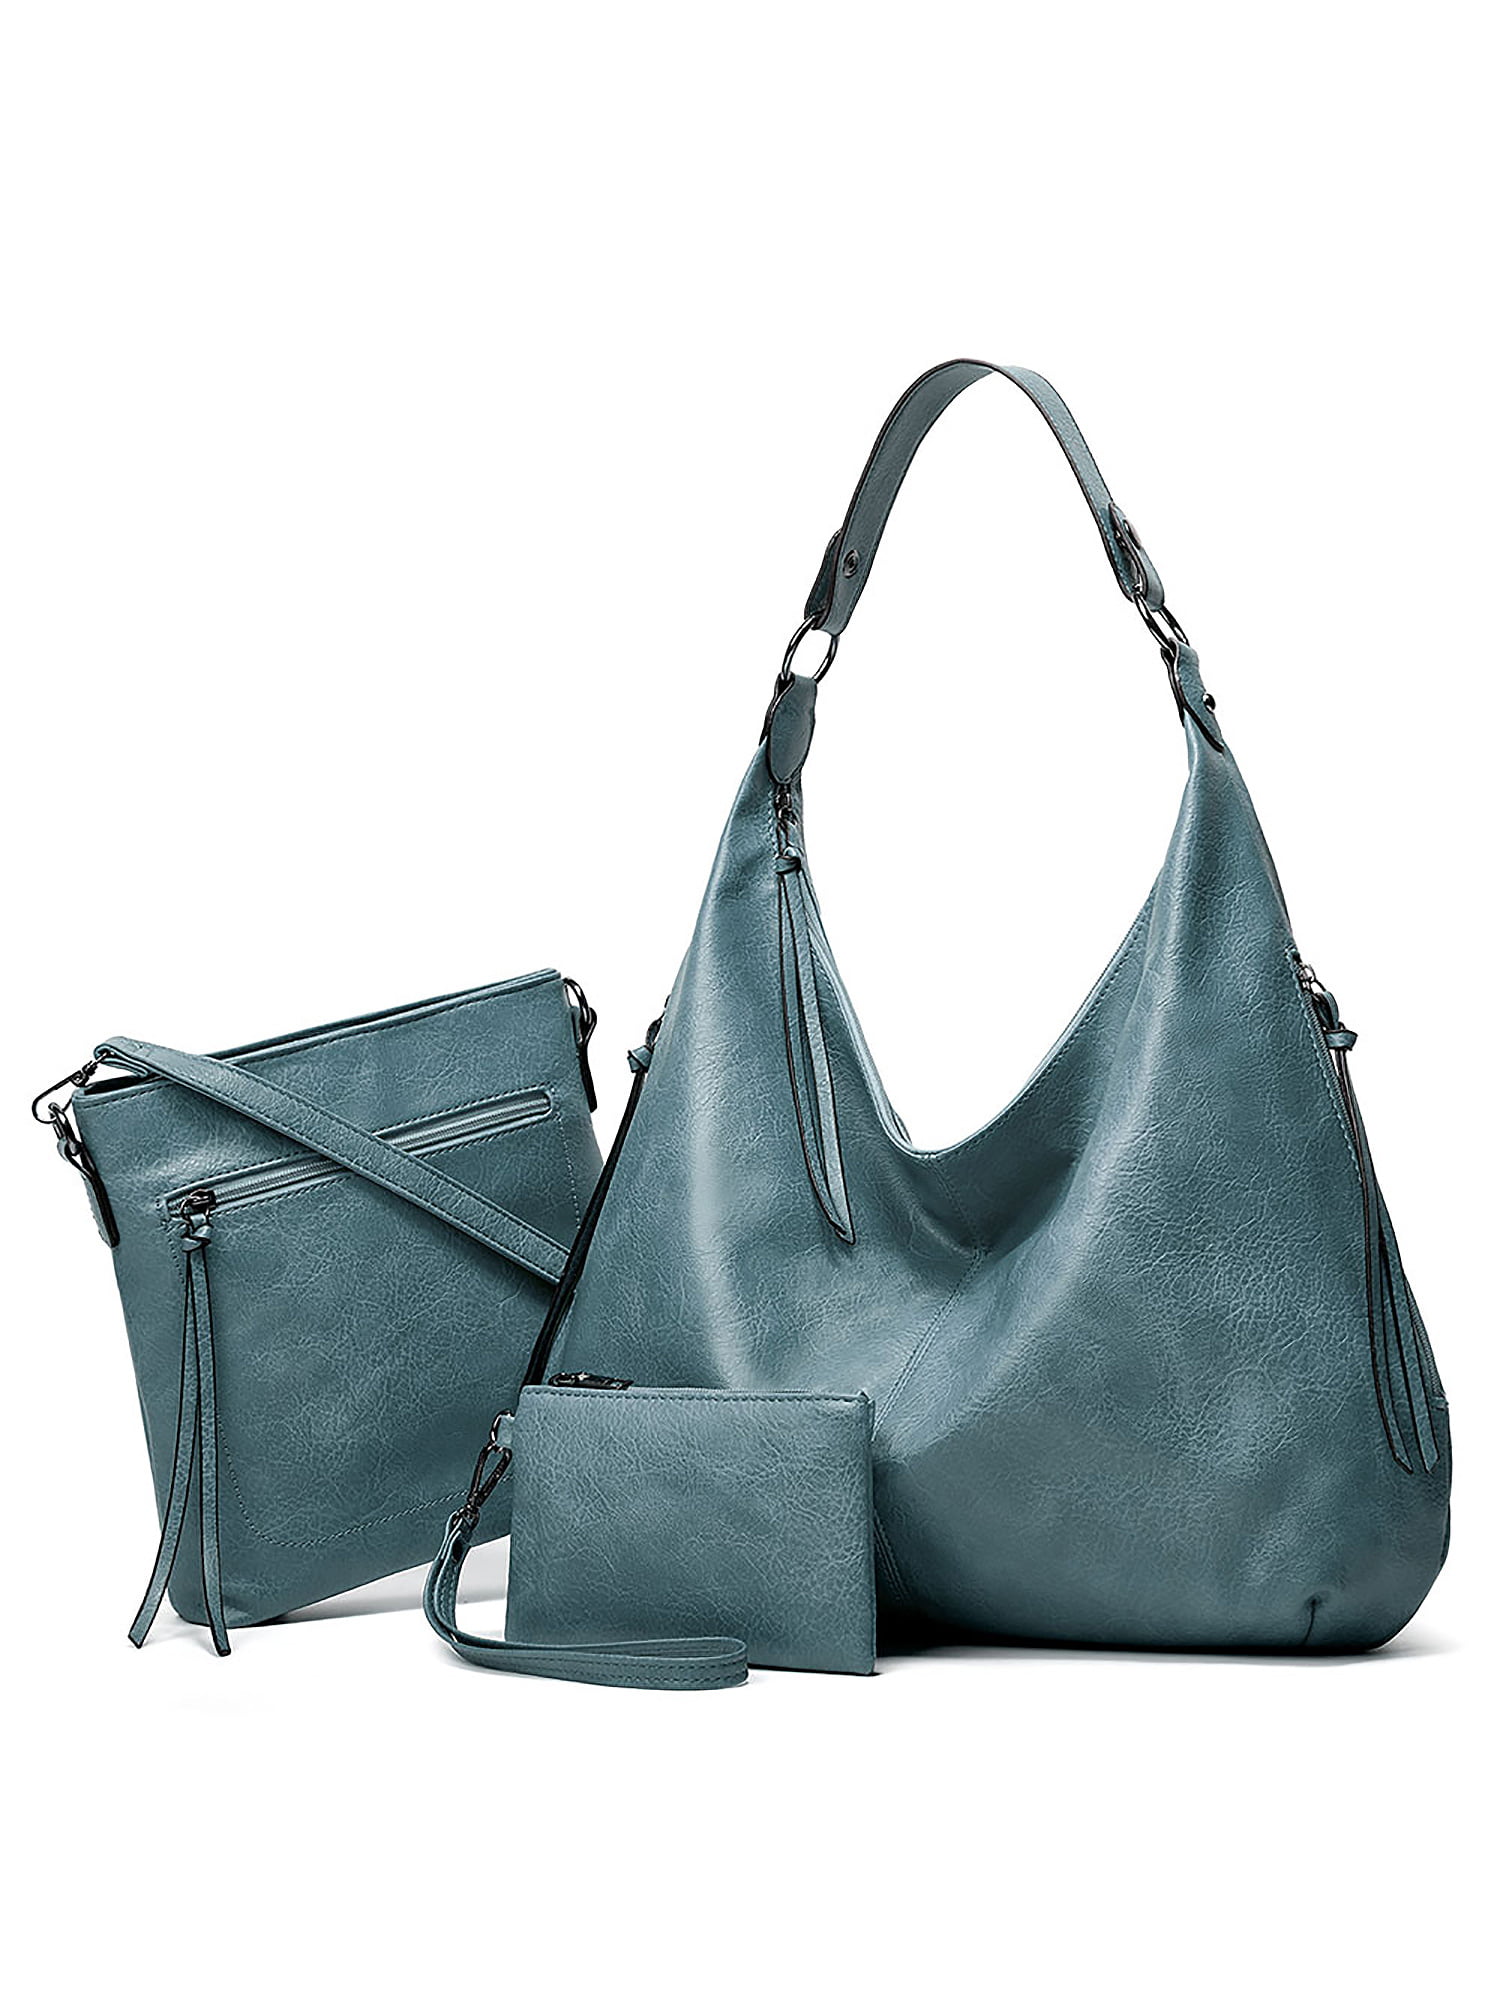 Large Leather Handbag Womens Shoulder Bags Tote Purse Messenger Hobo Satchel Bag 